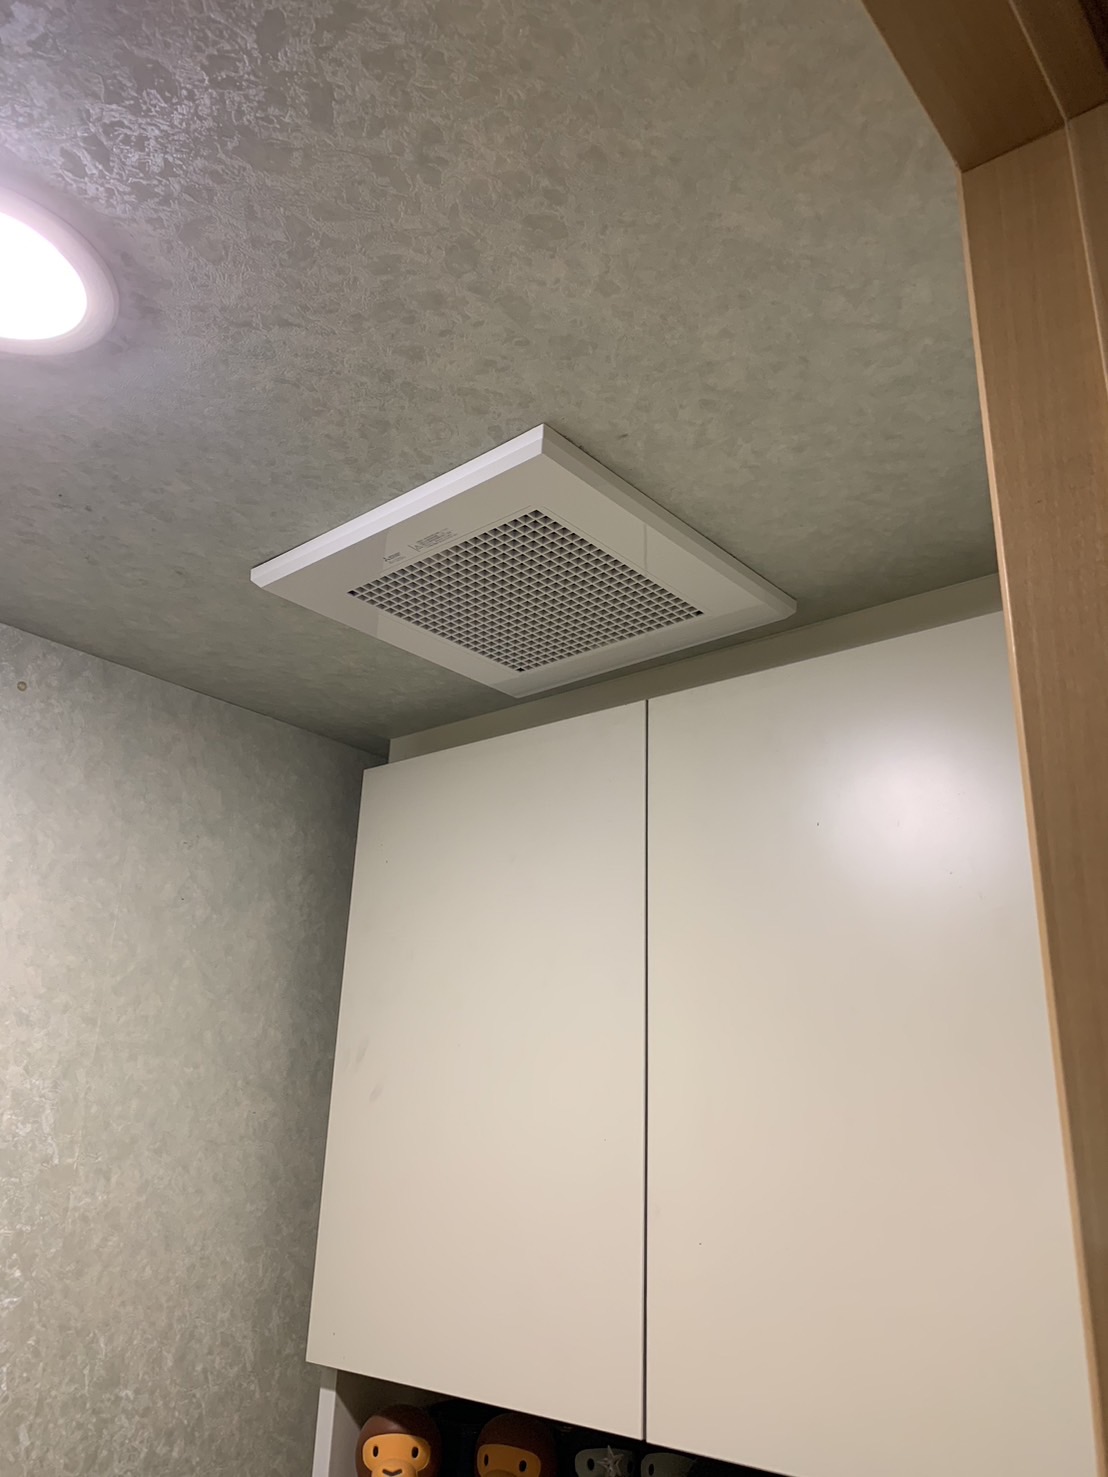 横浜市にお住まいのS様邸で行われた換気扇の取替工事についてご紹介します。